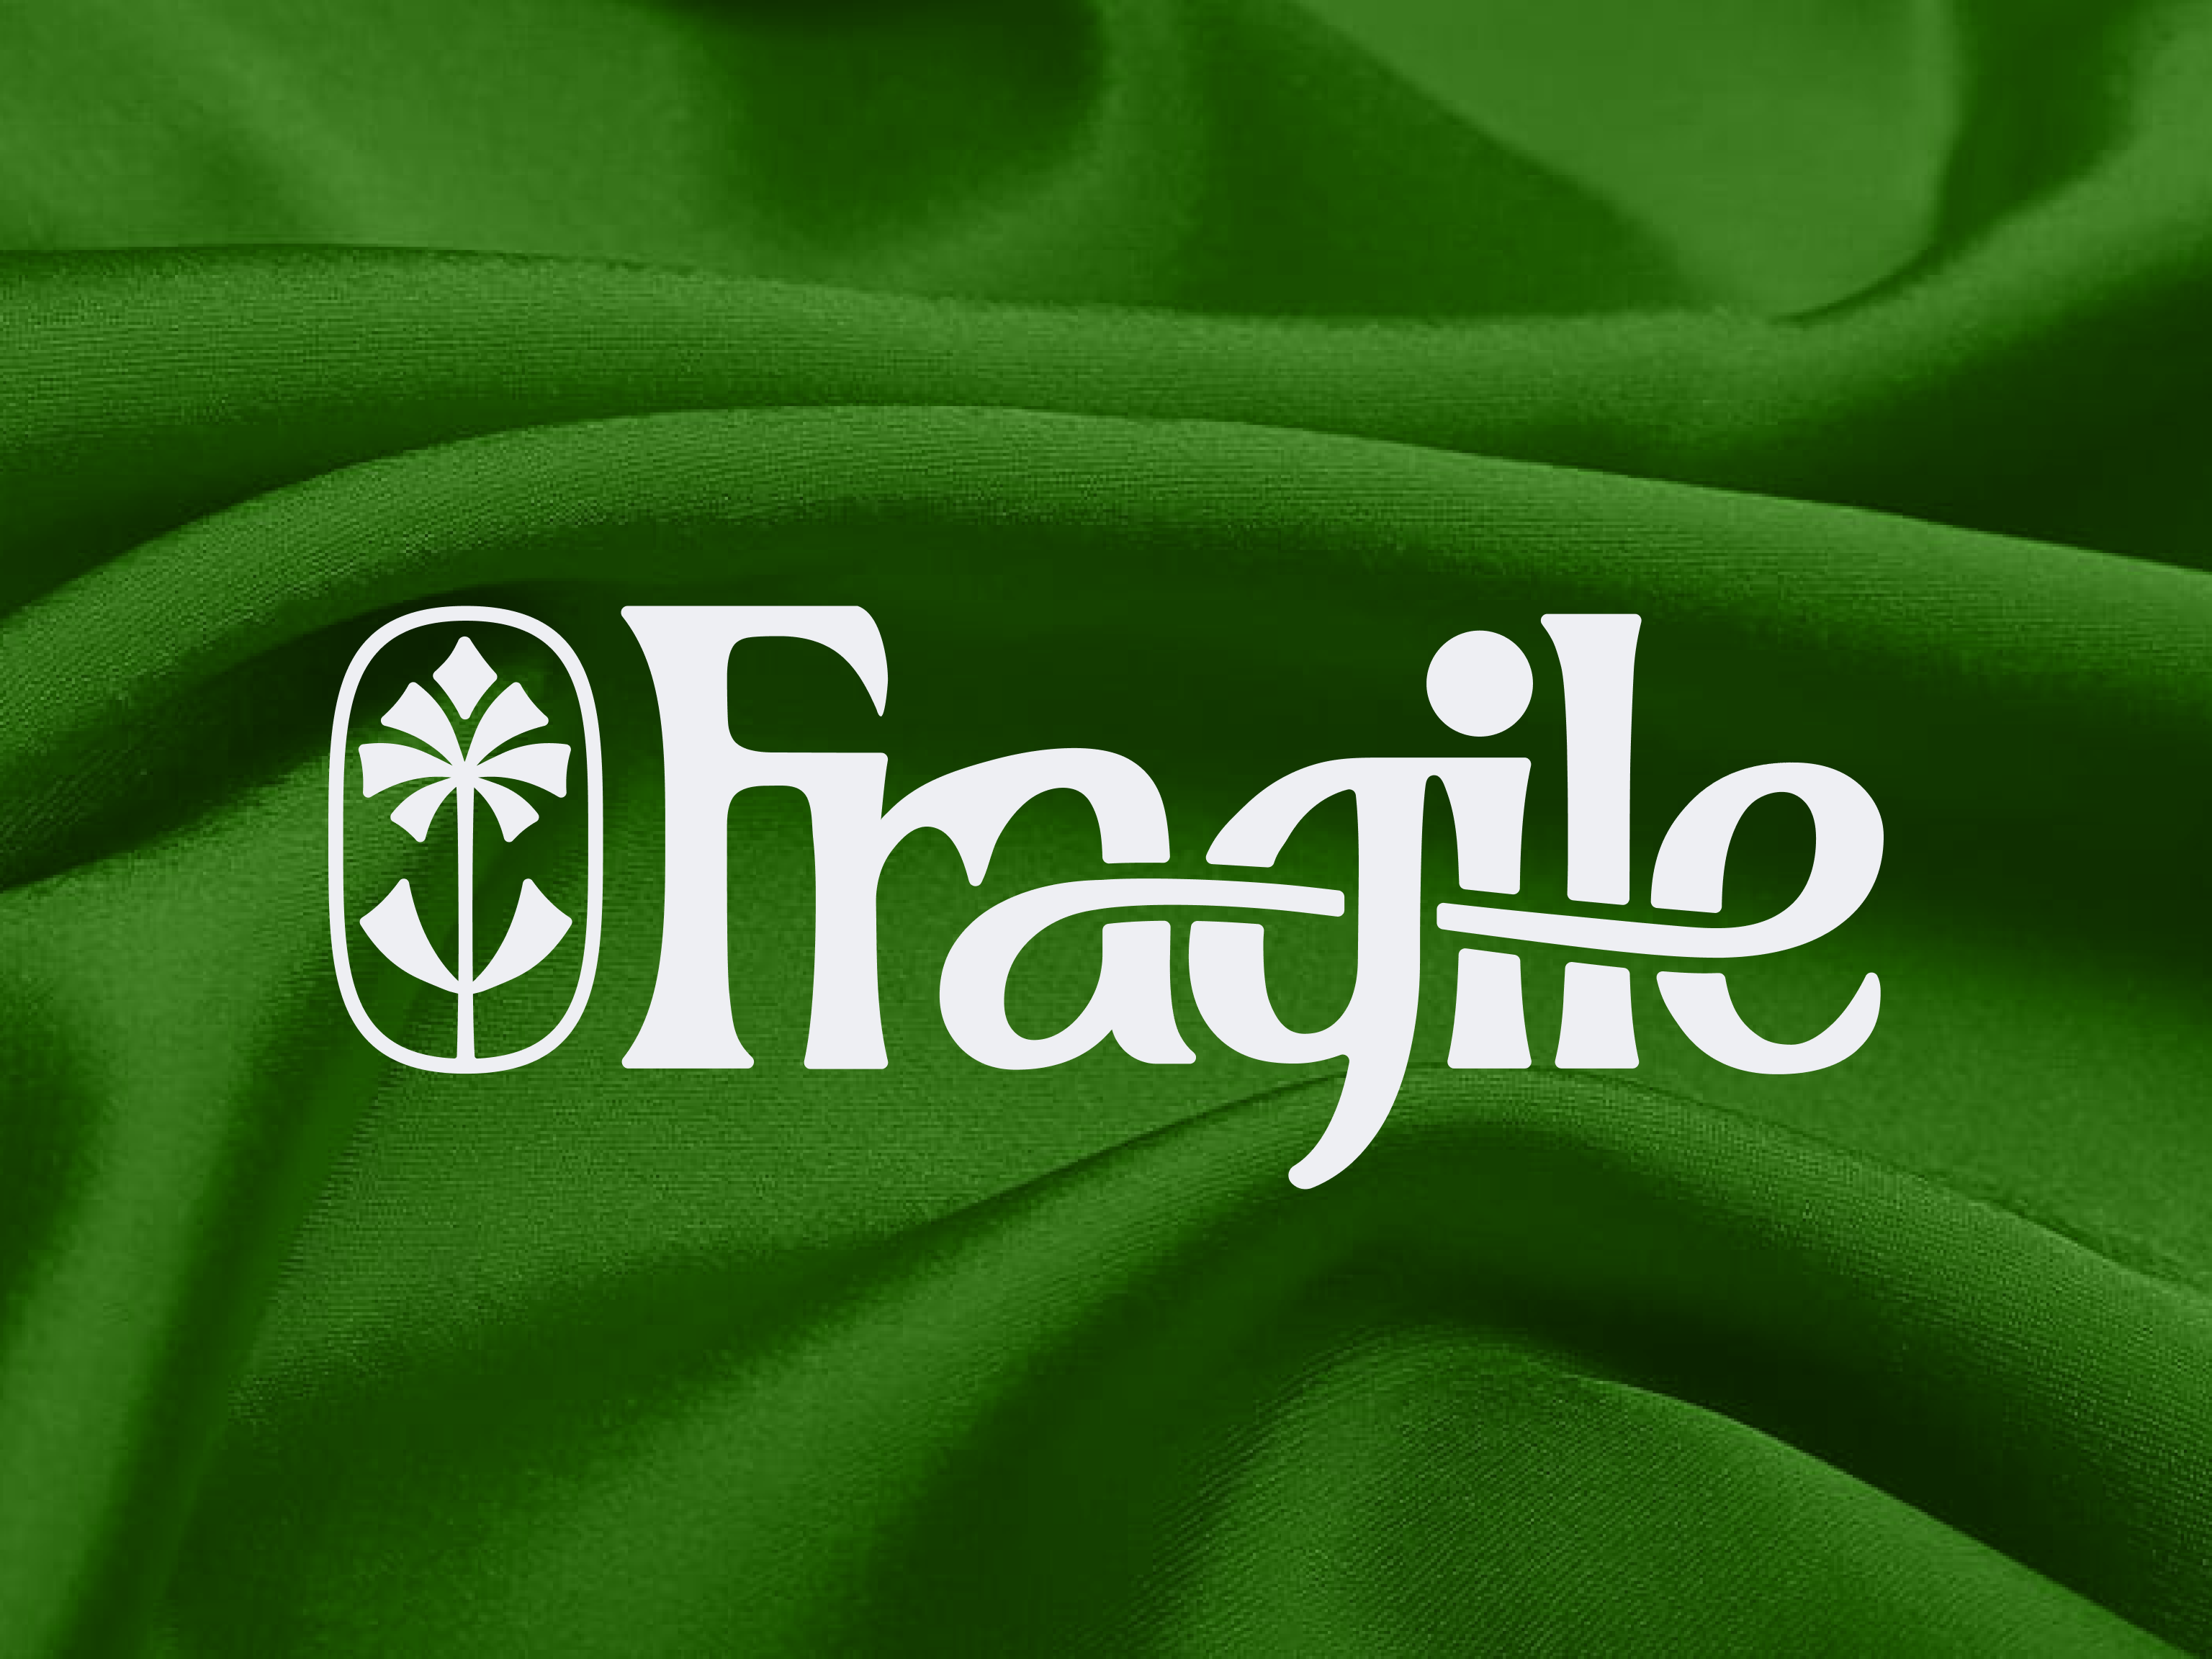 Fragile Stamp PNG Image, One Set Fragile Red Stamp, Fragile Stamp, Fragile  Logo, Fragile Vector PNG Image For Free Download